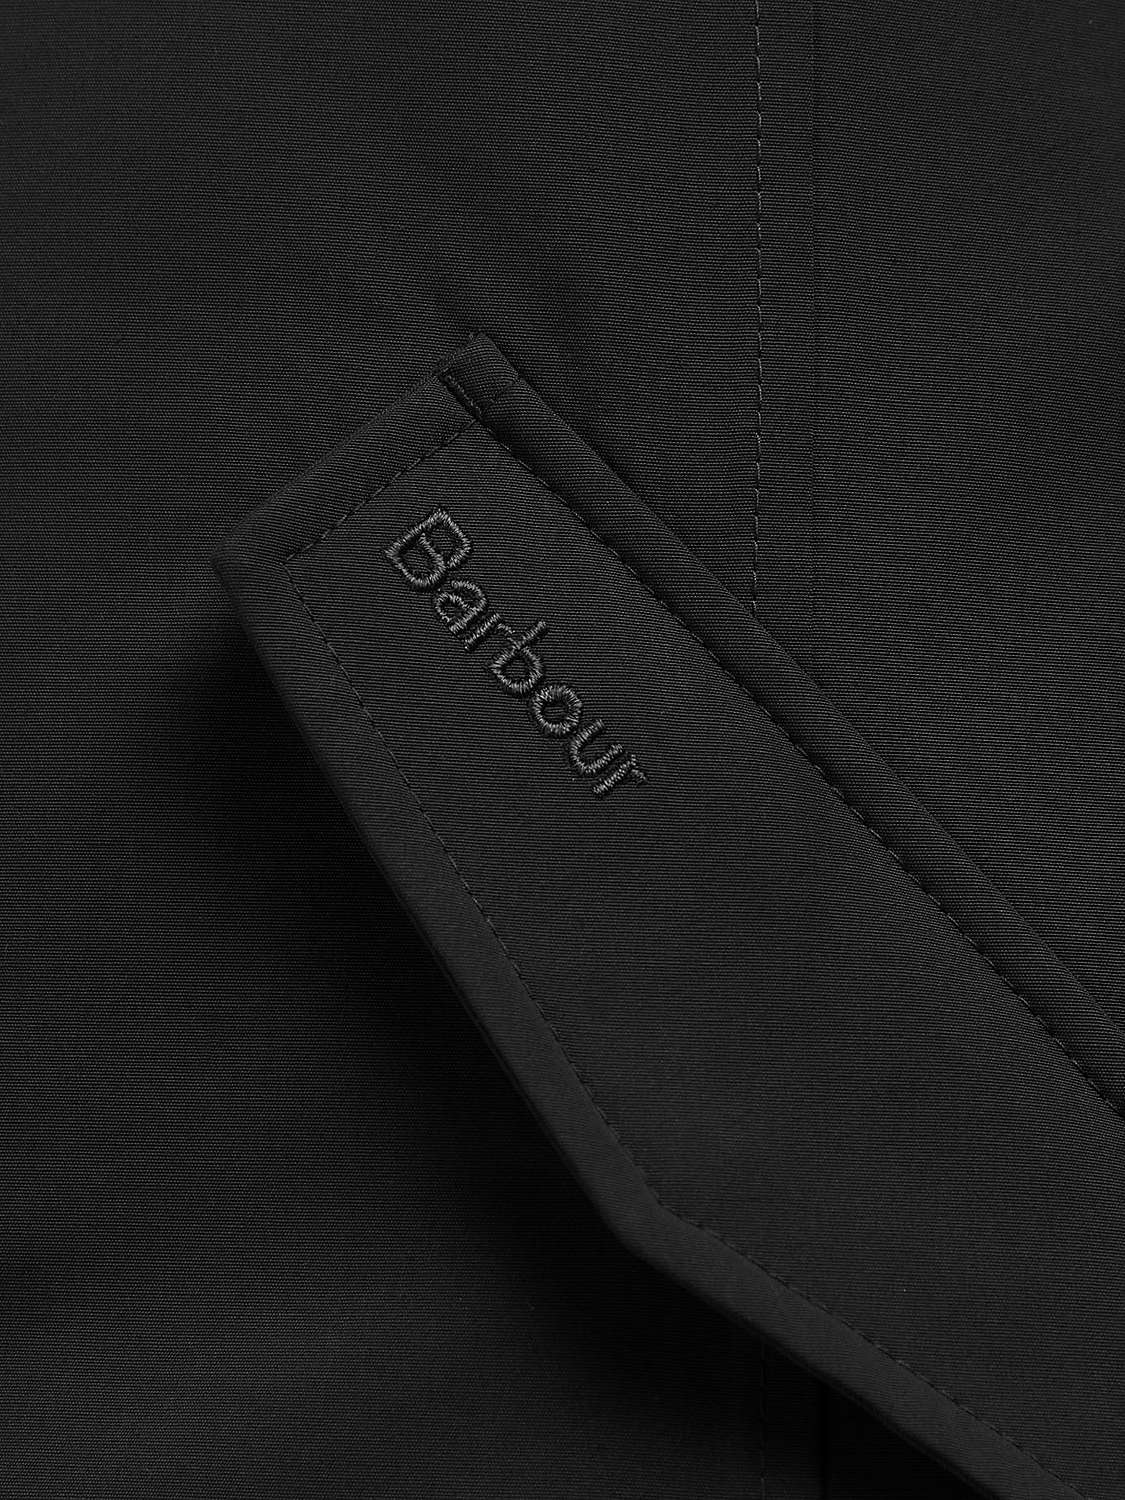 Buy Barbour Maya Faux Fur Hood Jacket, Black Online at johnlewis.com